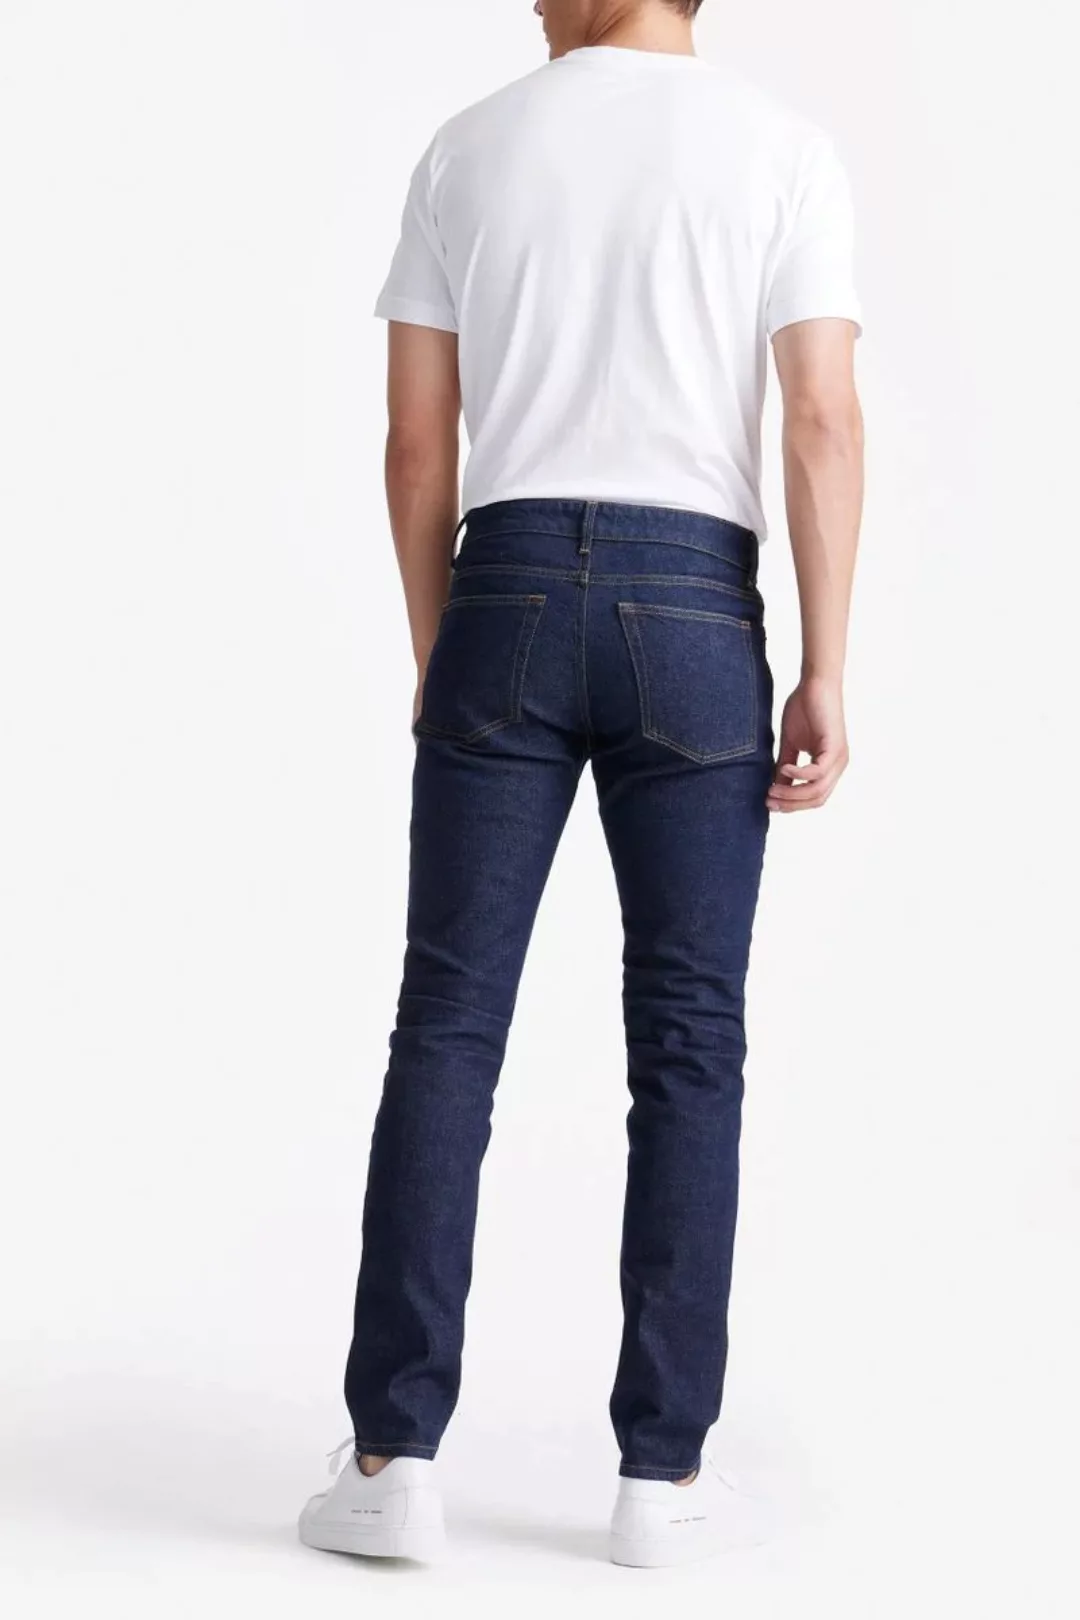 King Essentials The Jason Jeans Navy - Größe W 34 - L 36 günstig online kaufen